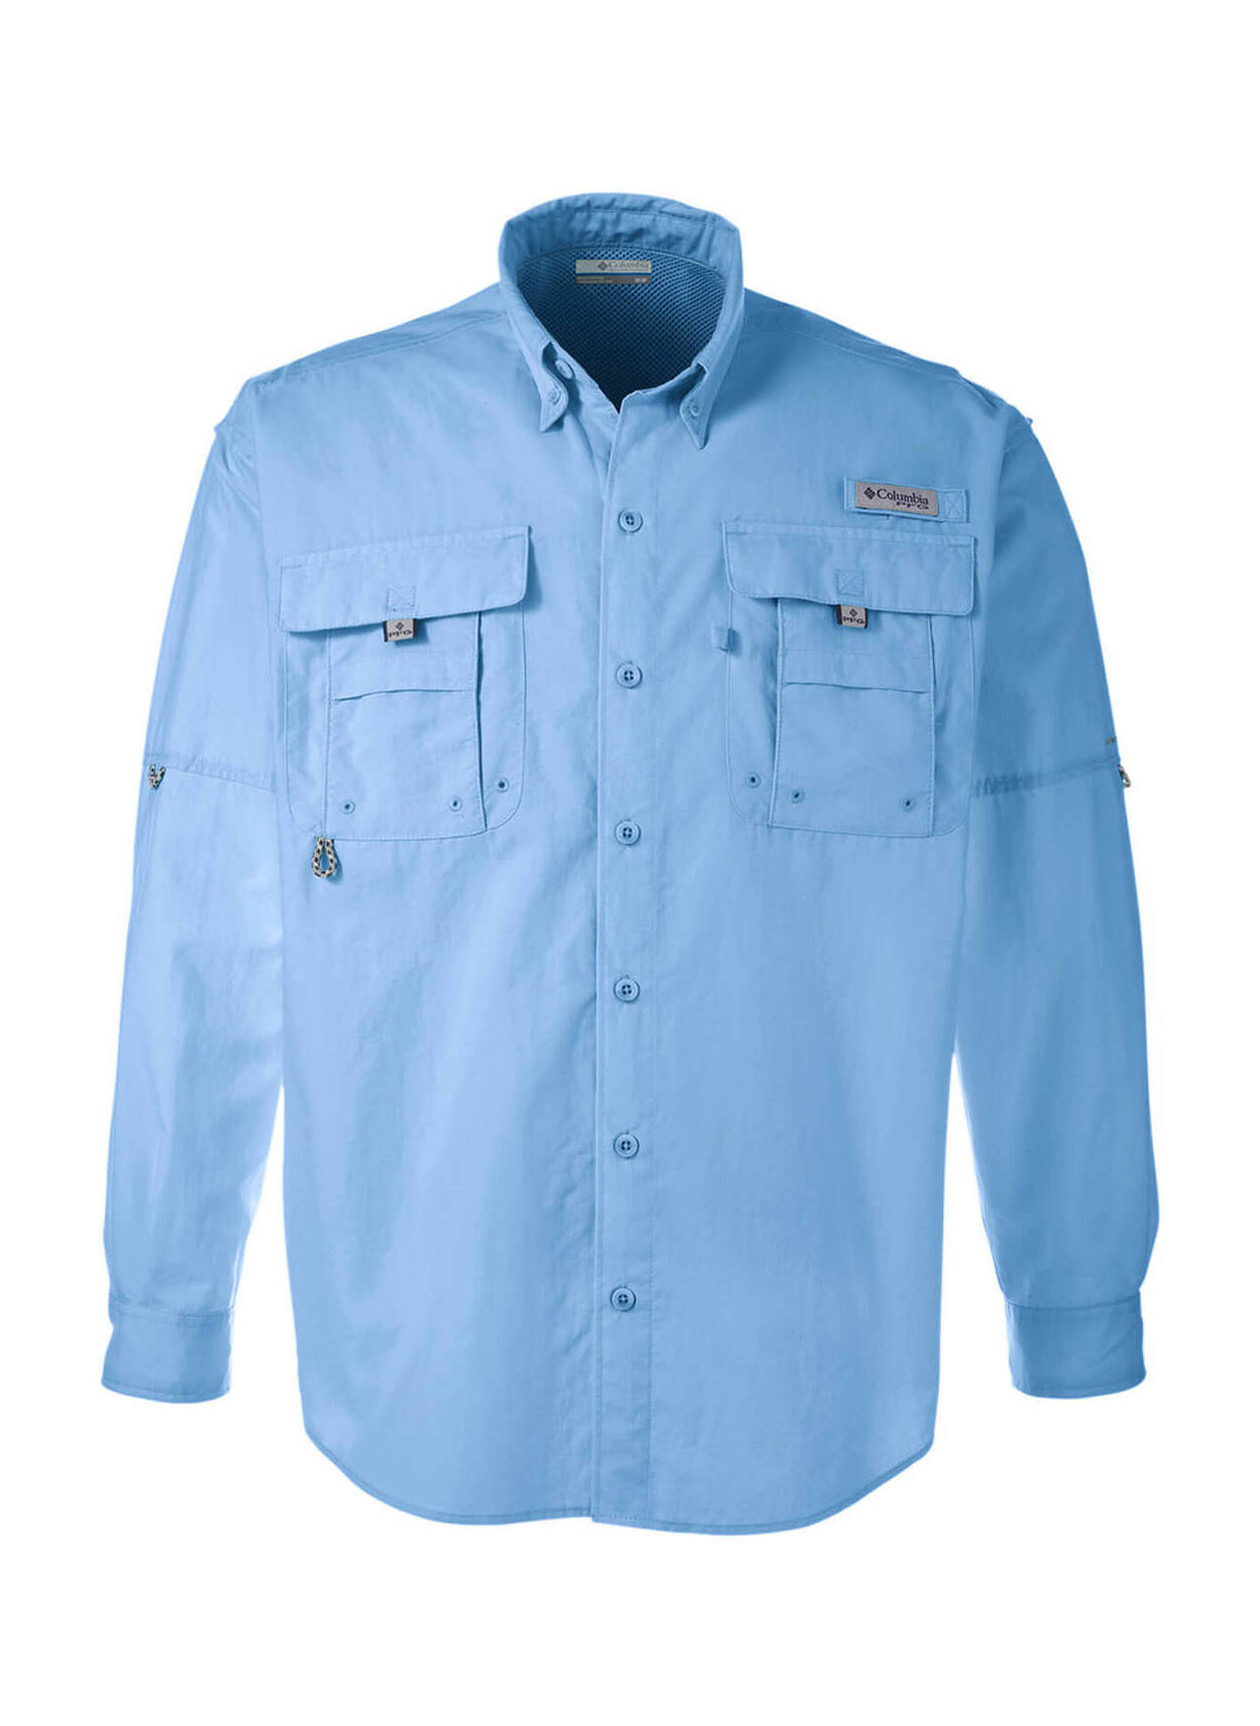 Printed Columbia Men's Sail Bahama Long-Sleeve Shirt